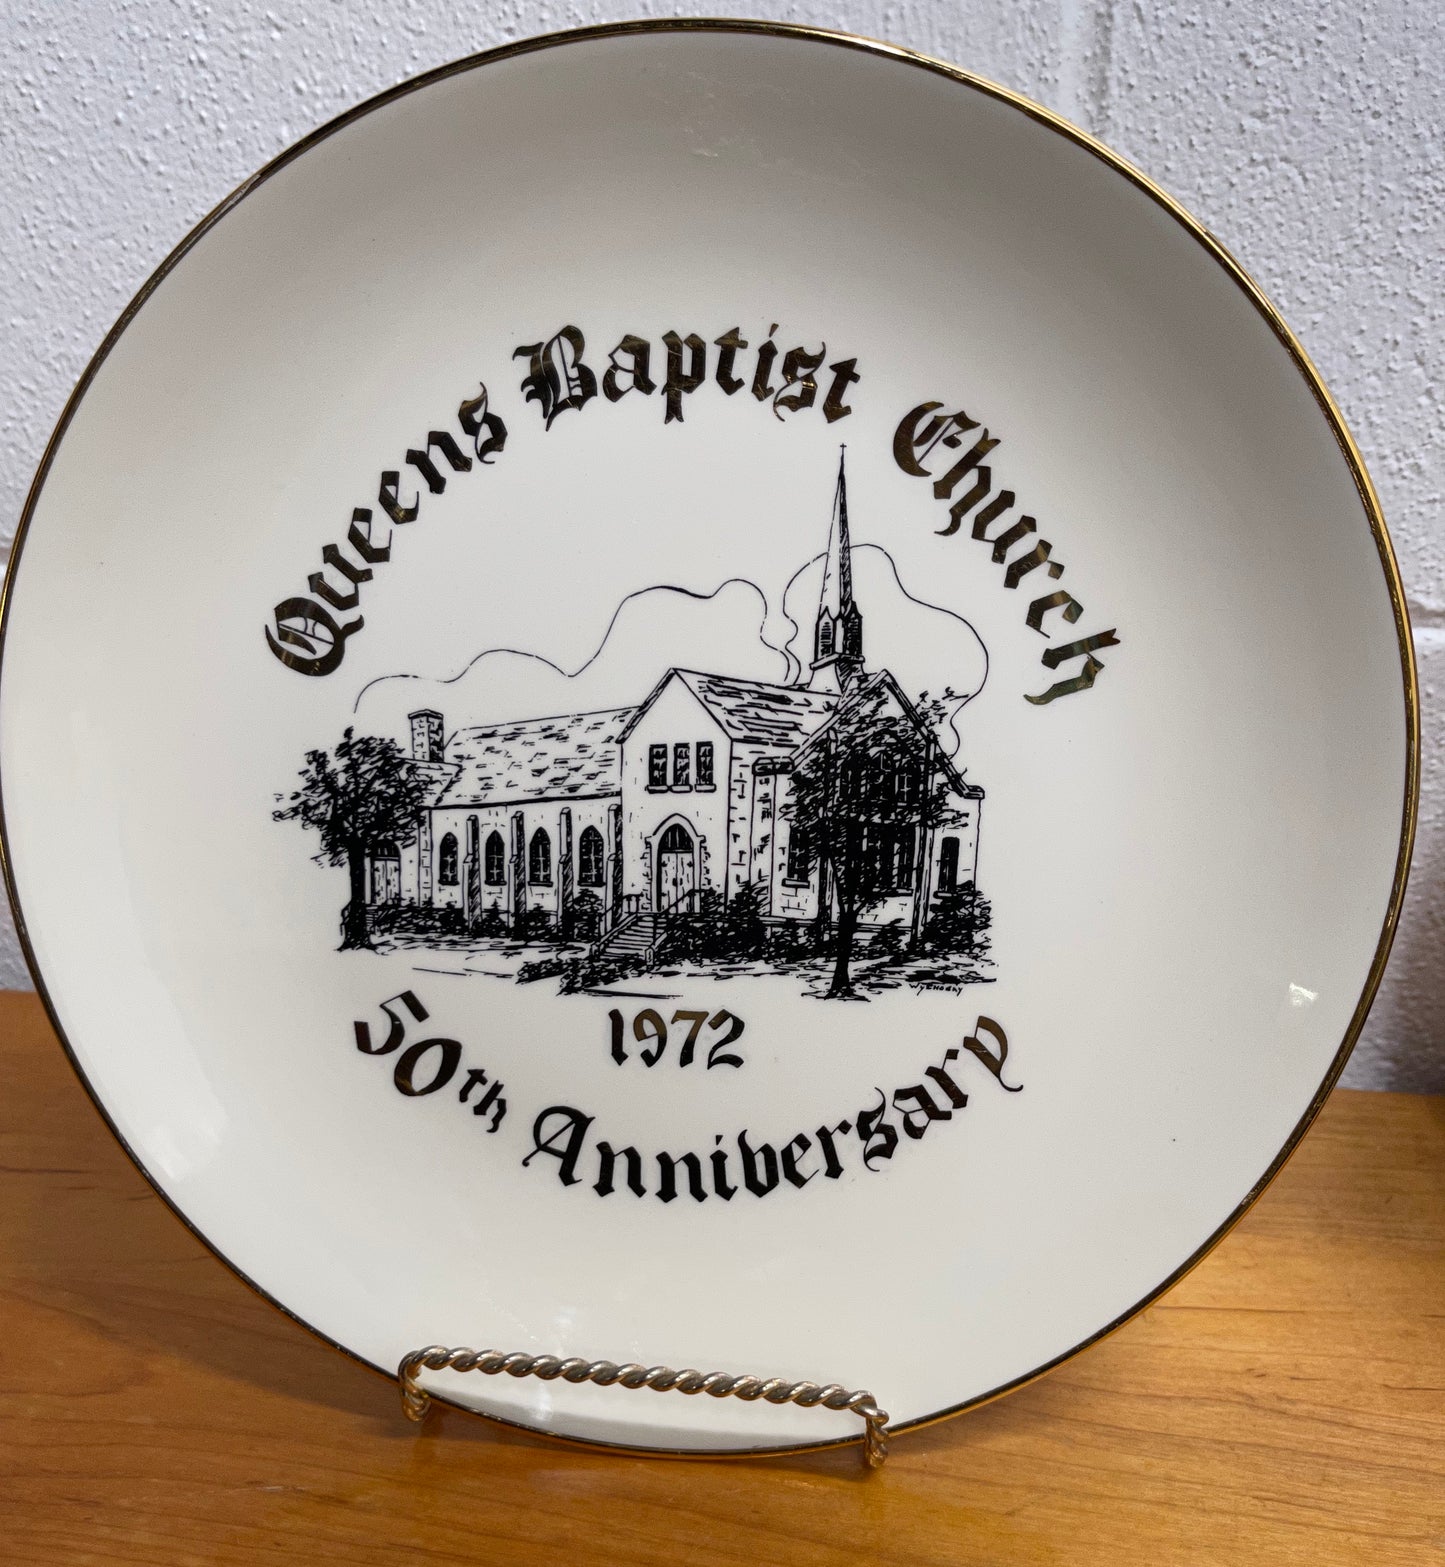 Church Plate - Queens Baptist Church 50th Anniversary  1972